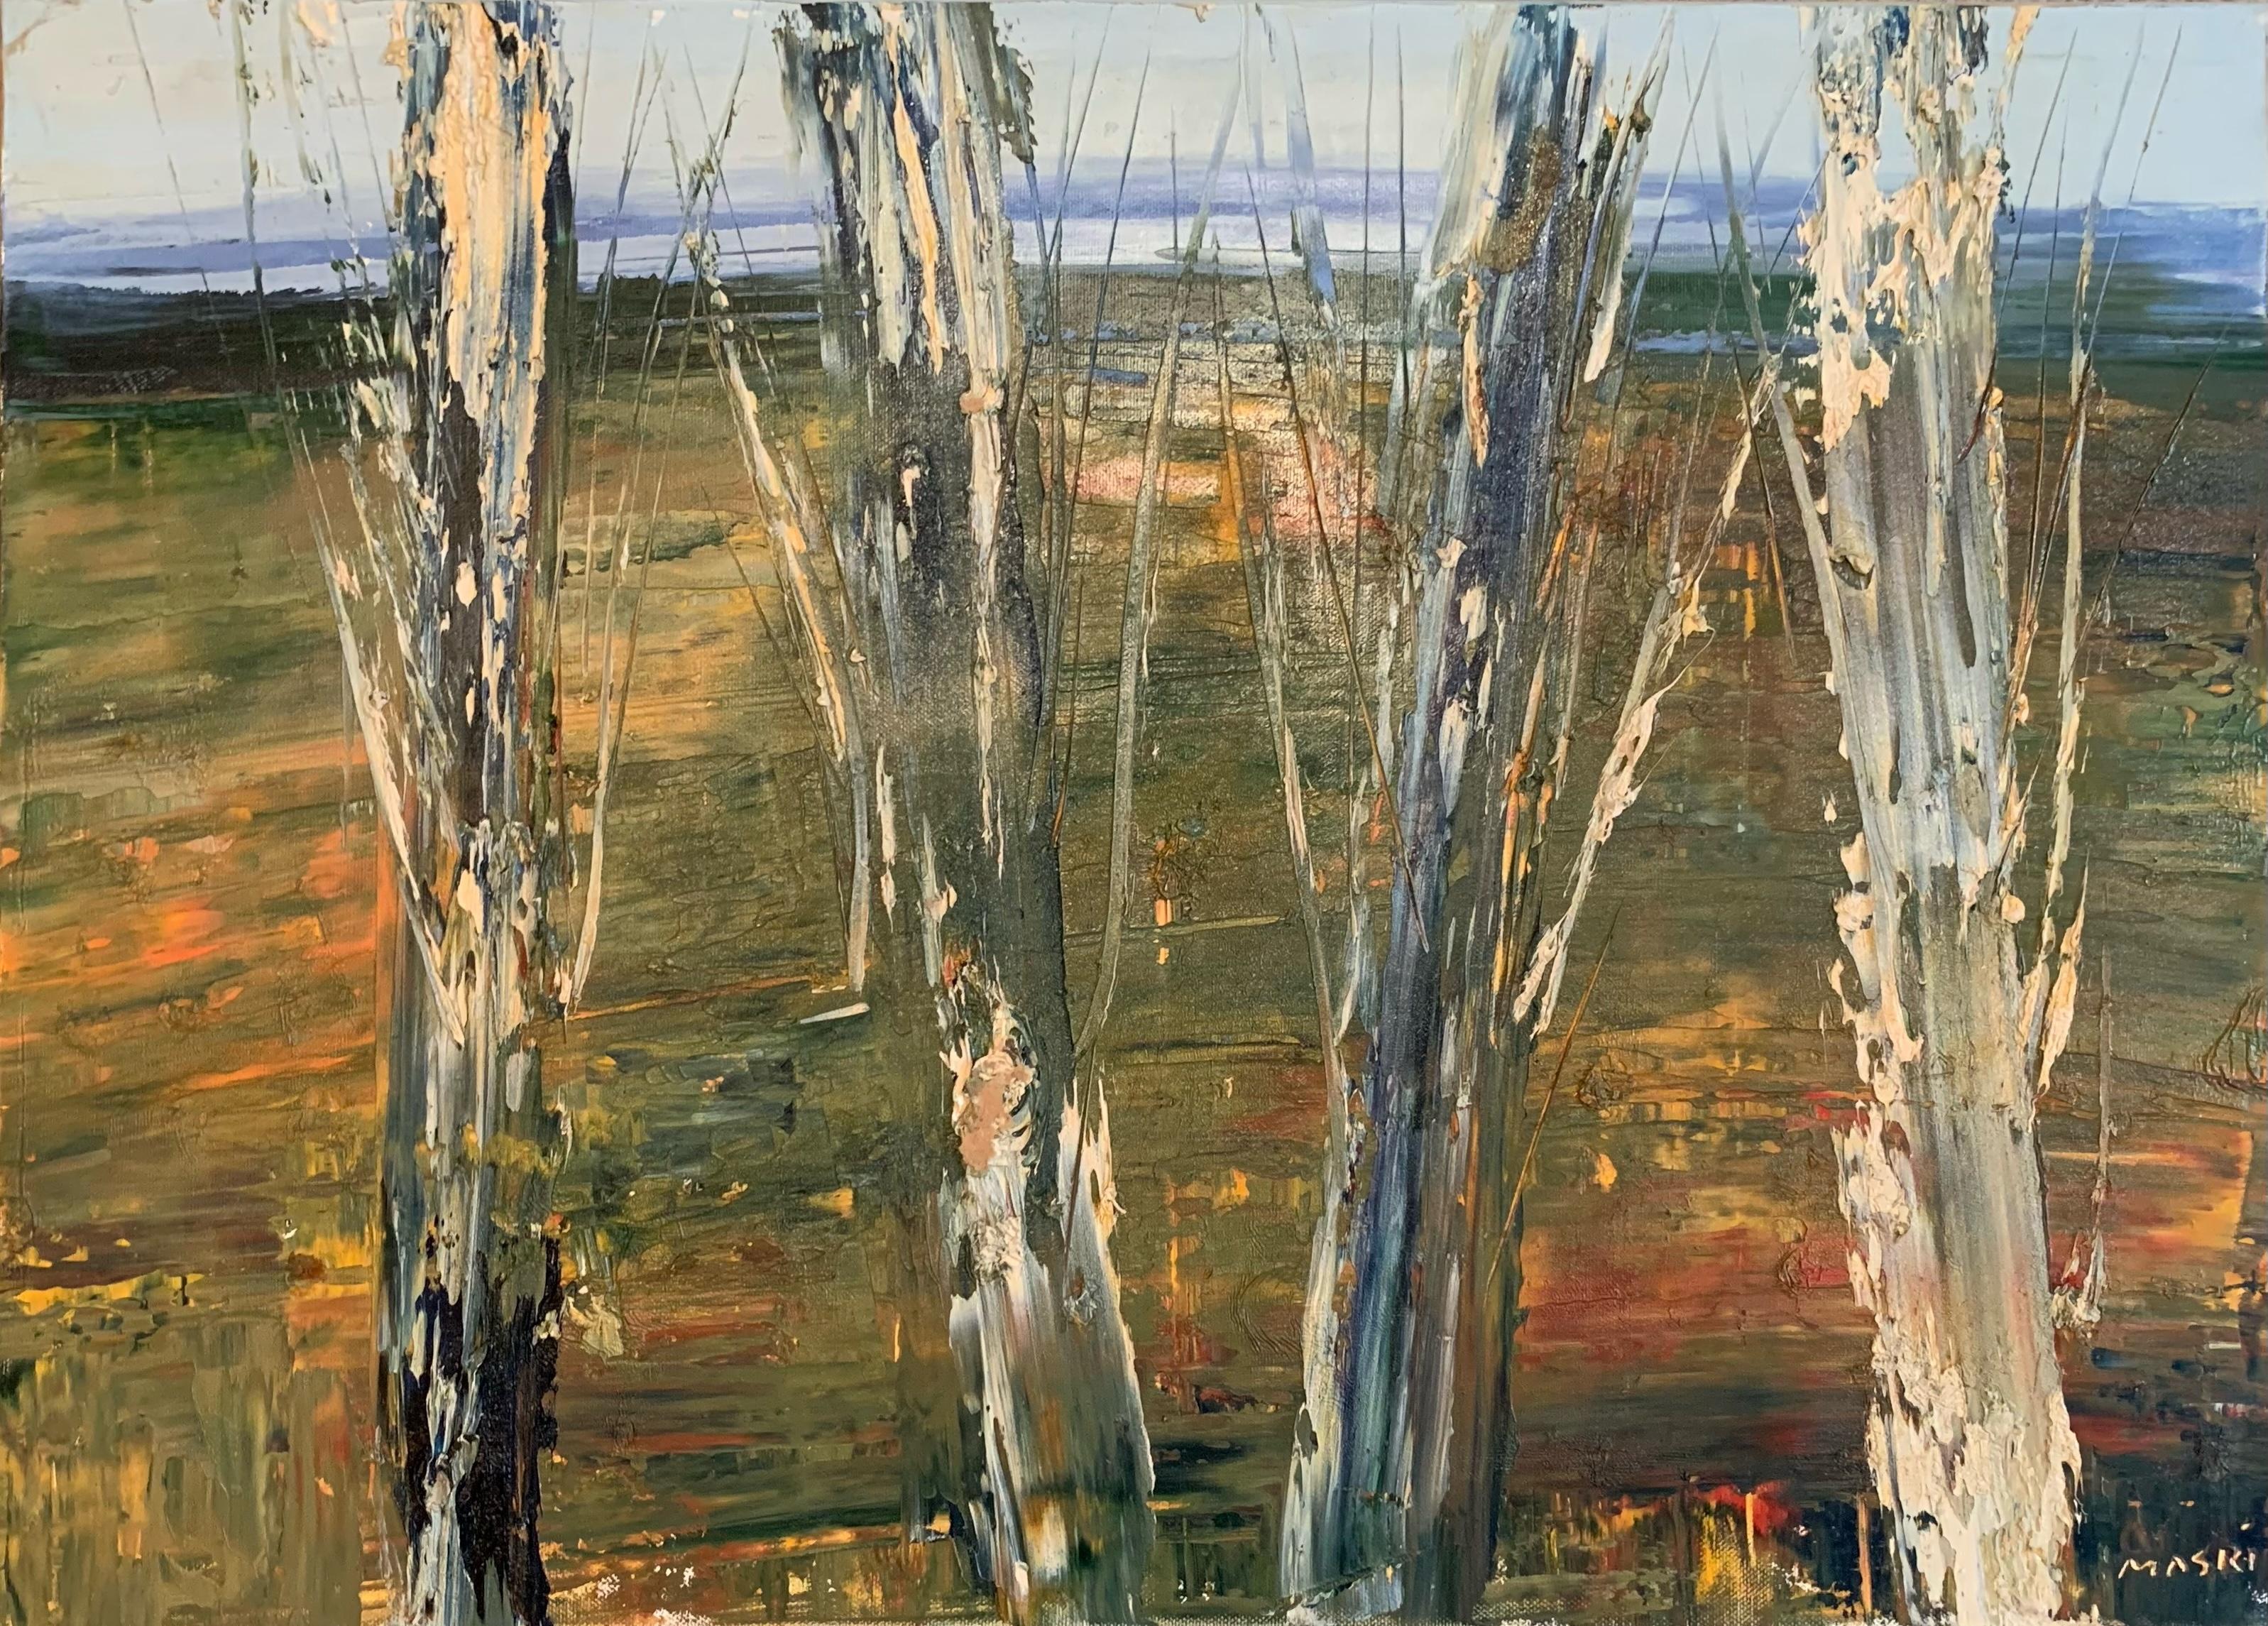 Abstract Painting Masri Hayssam - "Autumns End" Huile sur toile Paysage contemporain d'expressionnisme abstrait